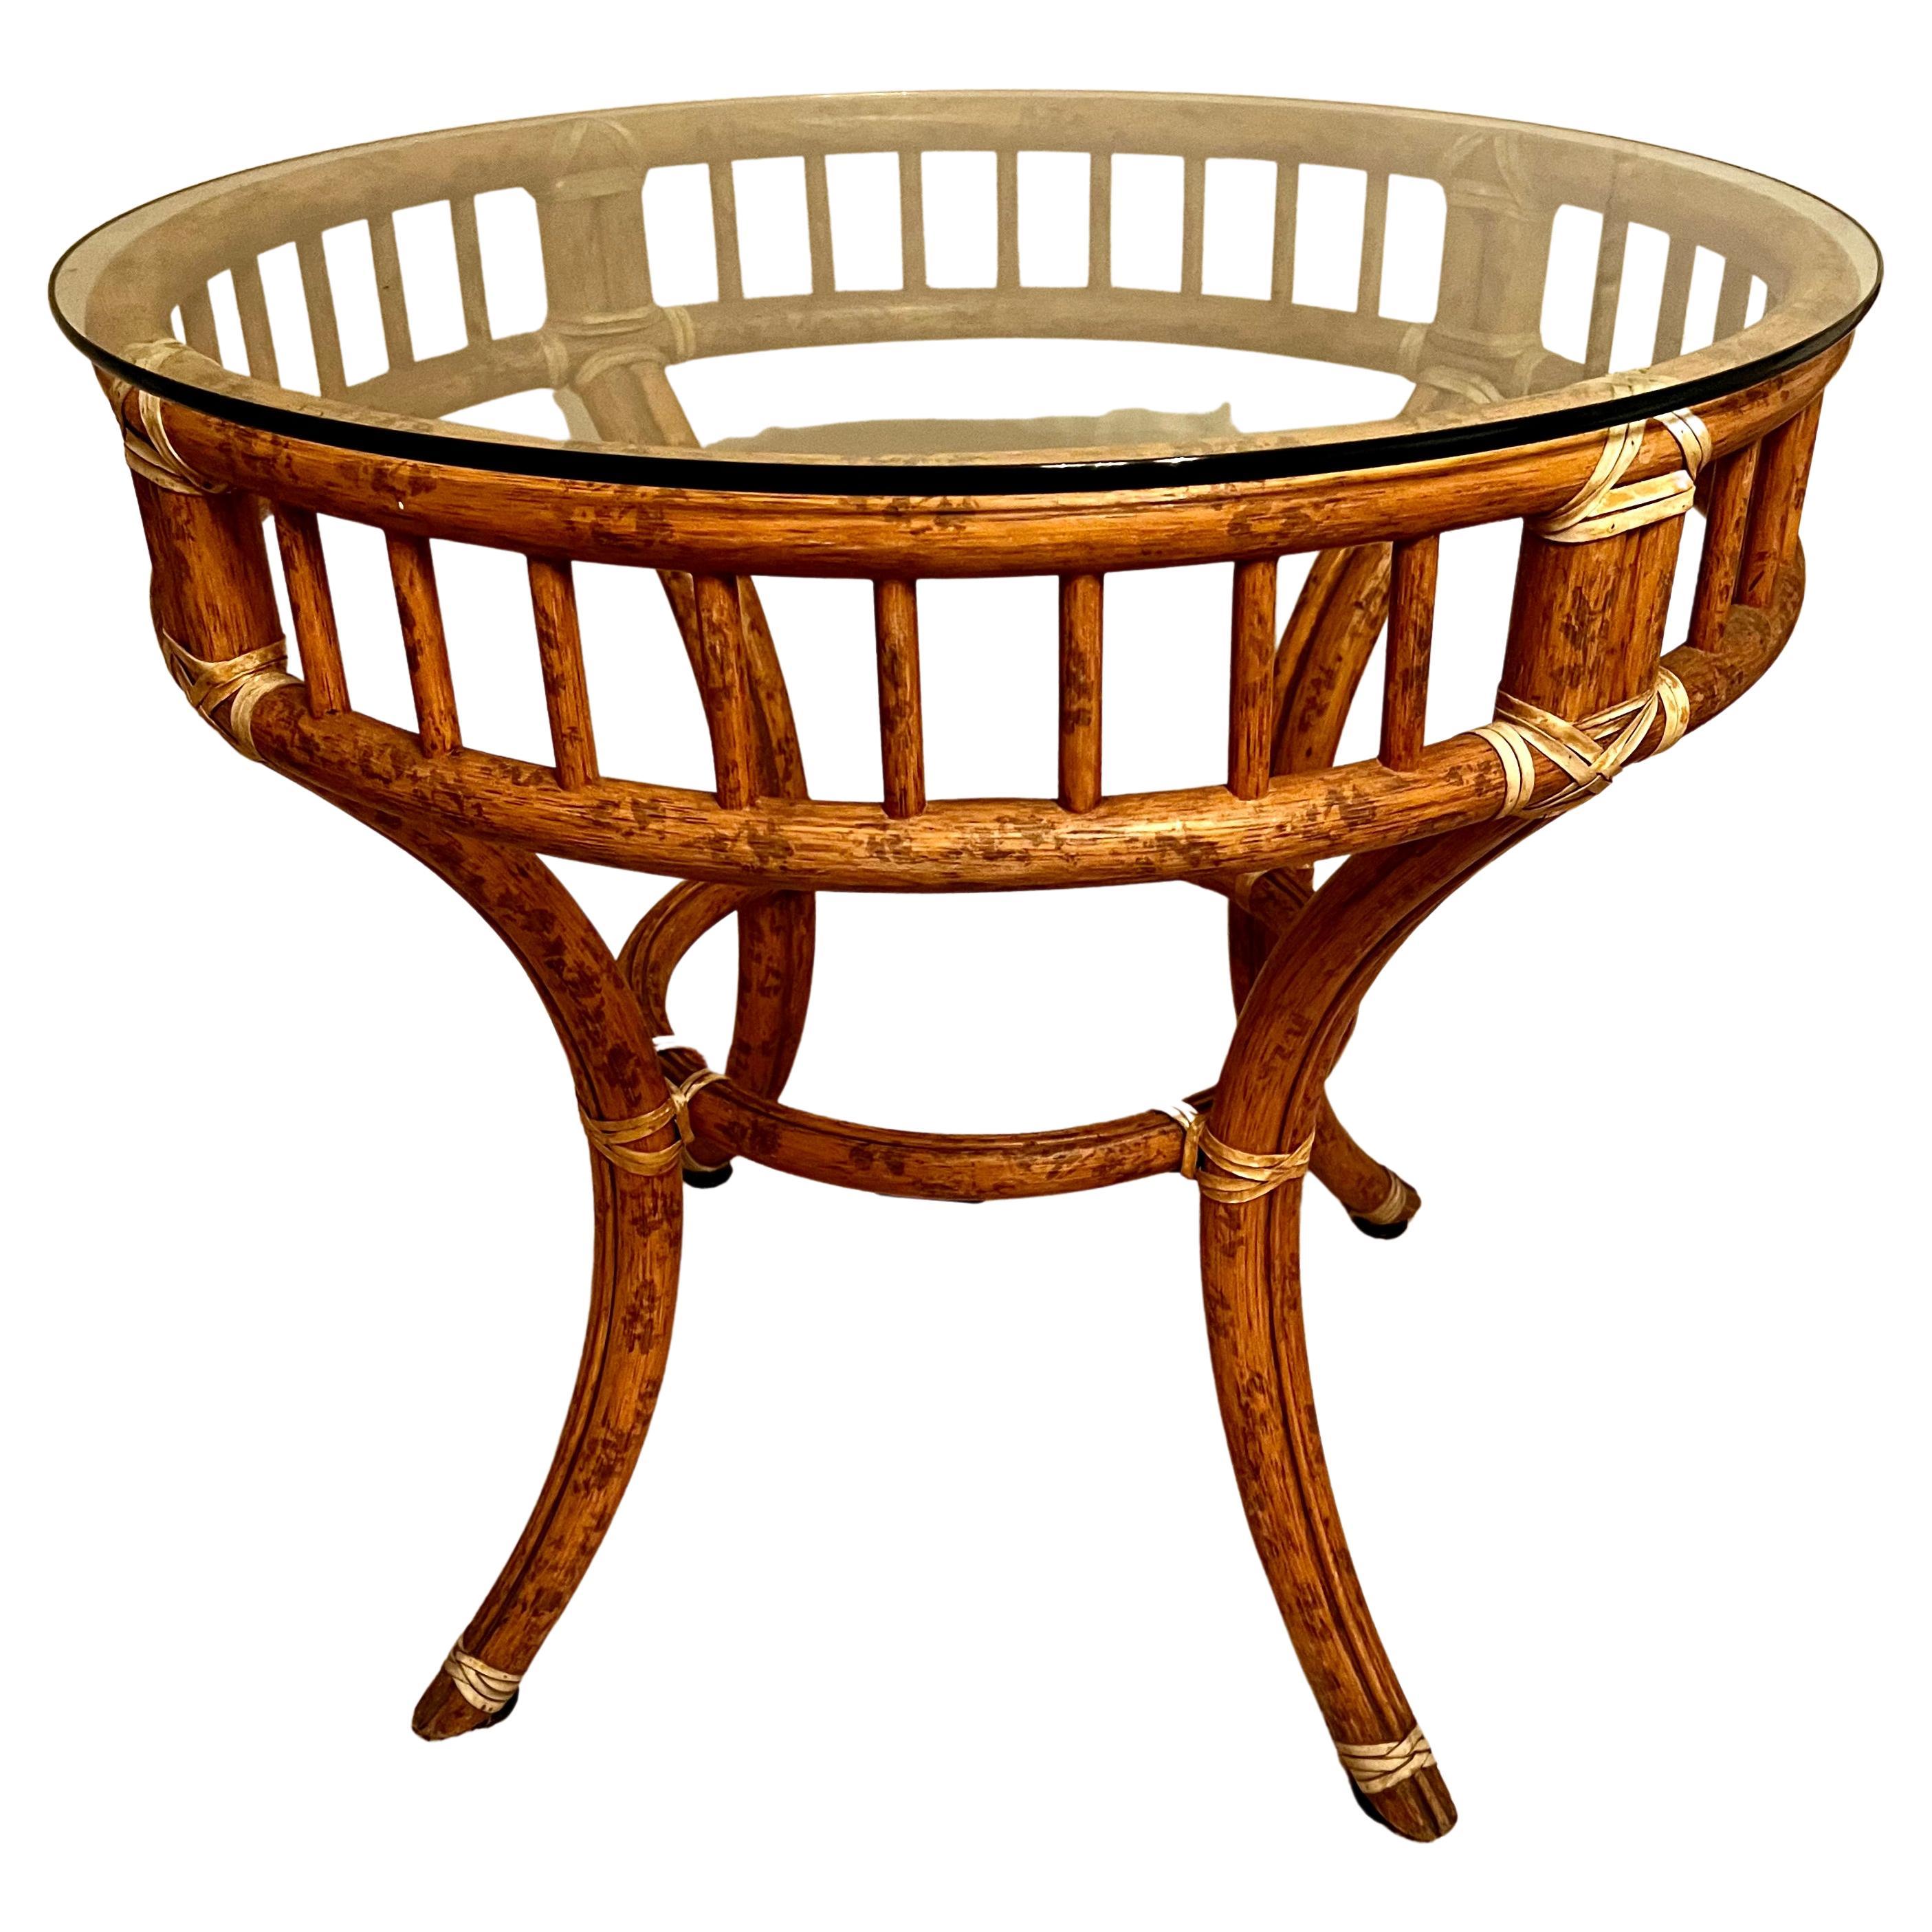 Une table en rotin ou en bambou épais avec une sangle en cuir. La table ronde s'adapte à de nombreux espaces et peut être utilisée comme table d'appoint, table centrale ou, avec un verre plus grand, comme table de salle à manger pour quatre à huit